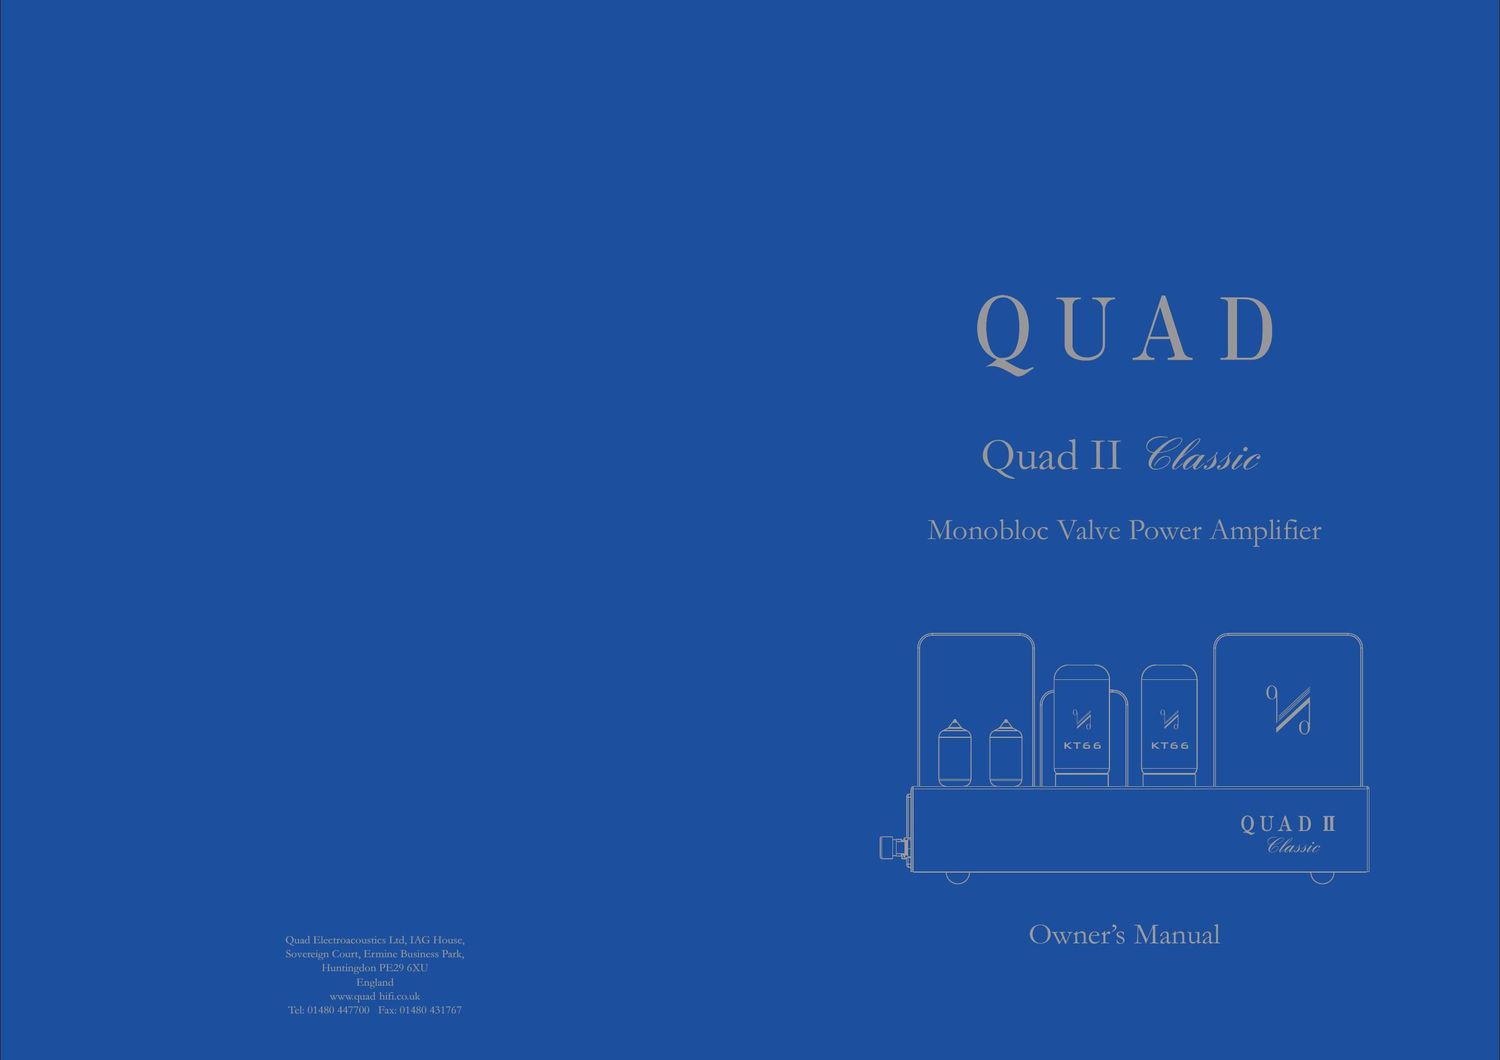 Quad II Classic Owners Manual